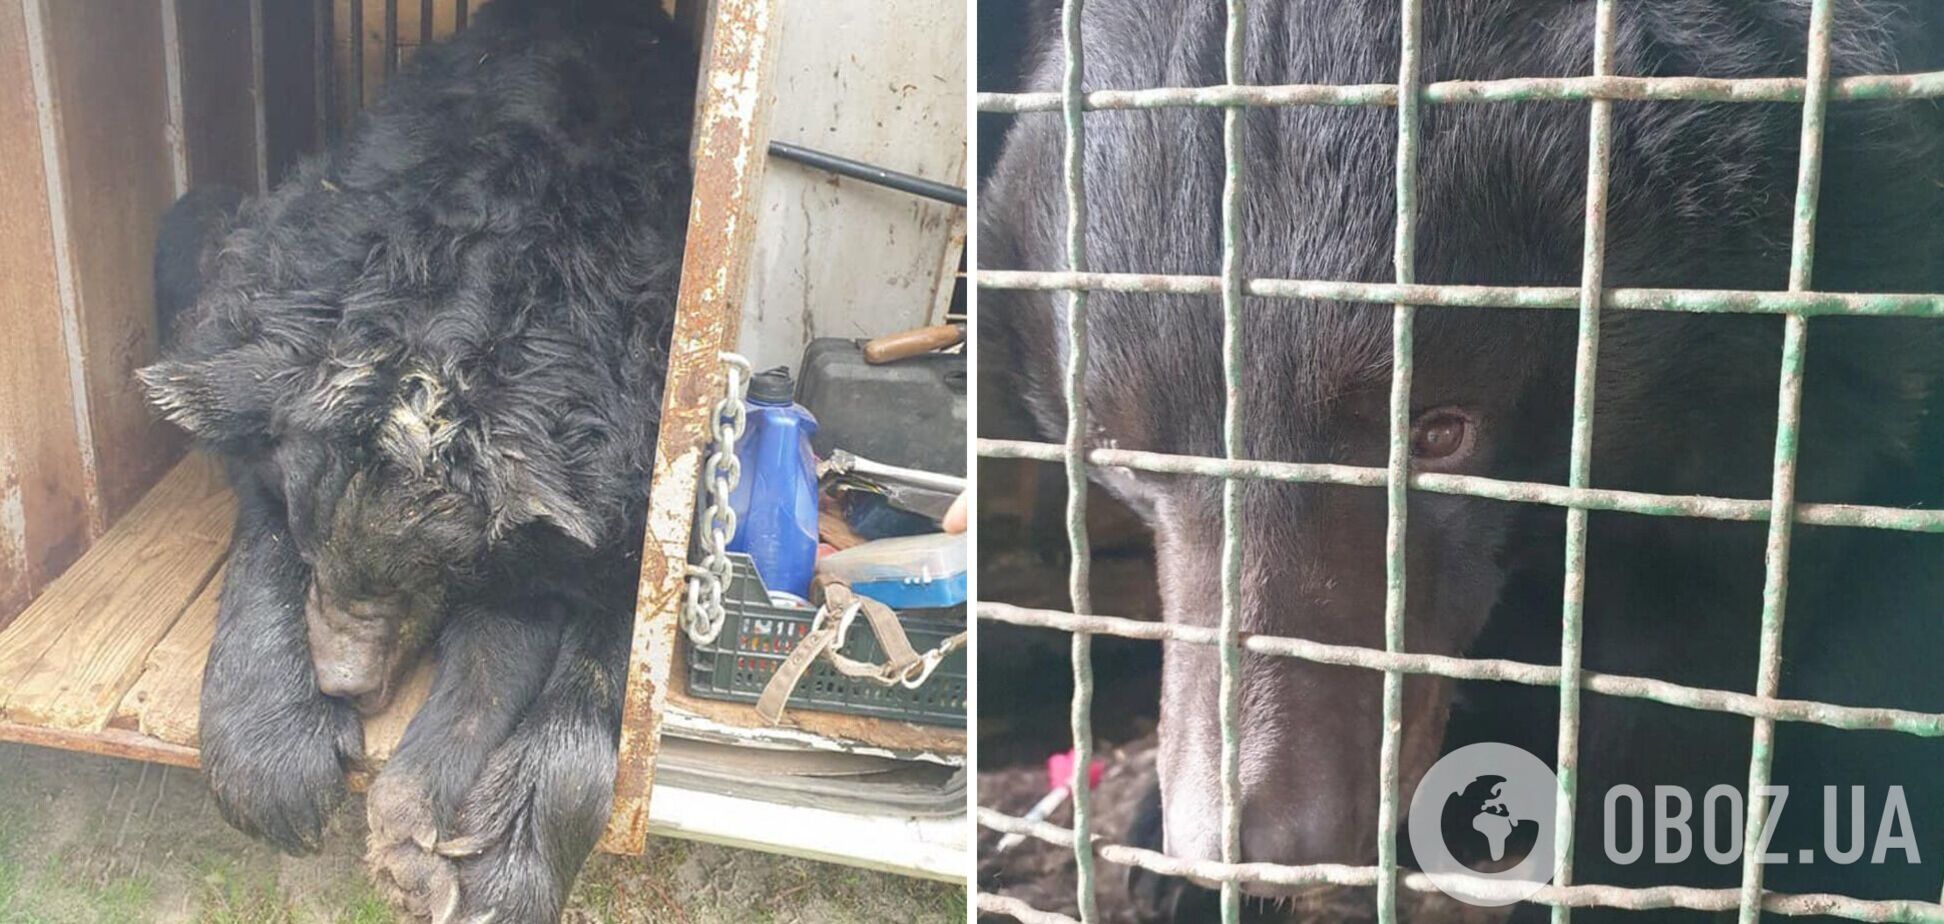 Зоозахисники врятували контуженого ведмедя, якого знайшли в приватному зоопарку під Лиманом. Фото   